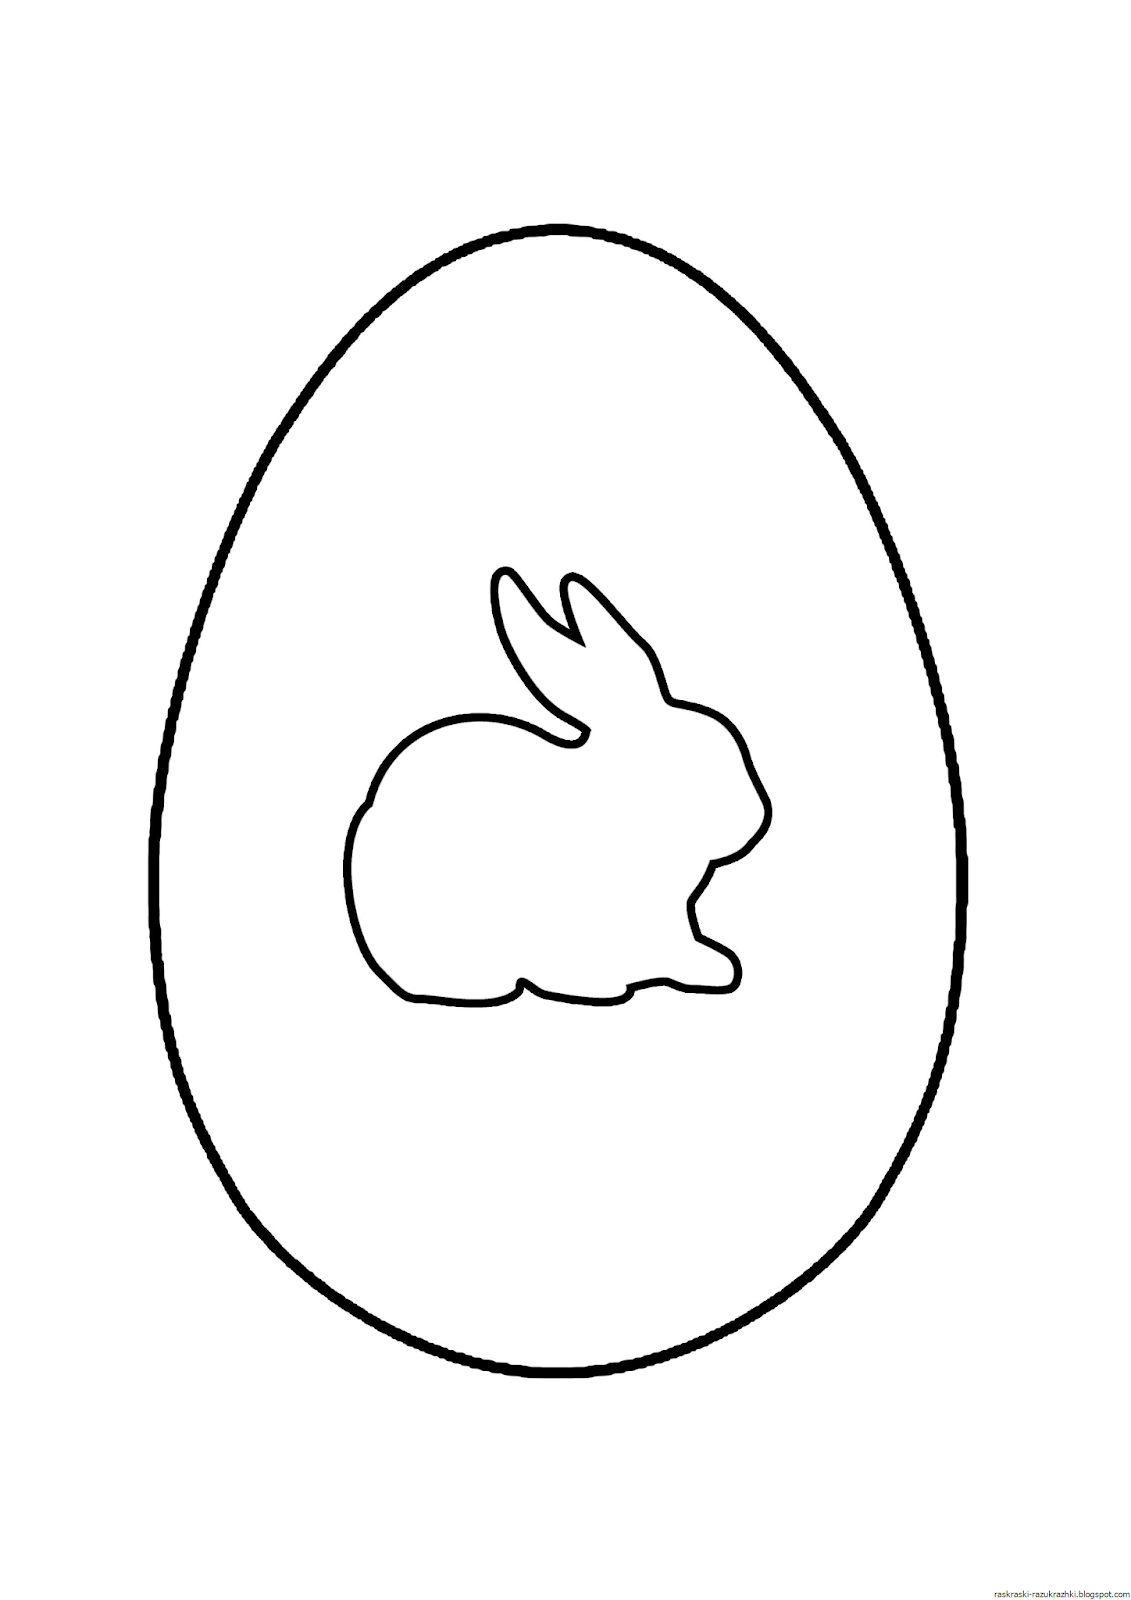 Яйцо для раскрашивания. Яйцо трафарет. Пасхальное яйцо раскраска. Яйцо раскраска для детей. Трафарет яйца для вырезания